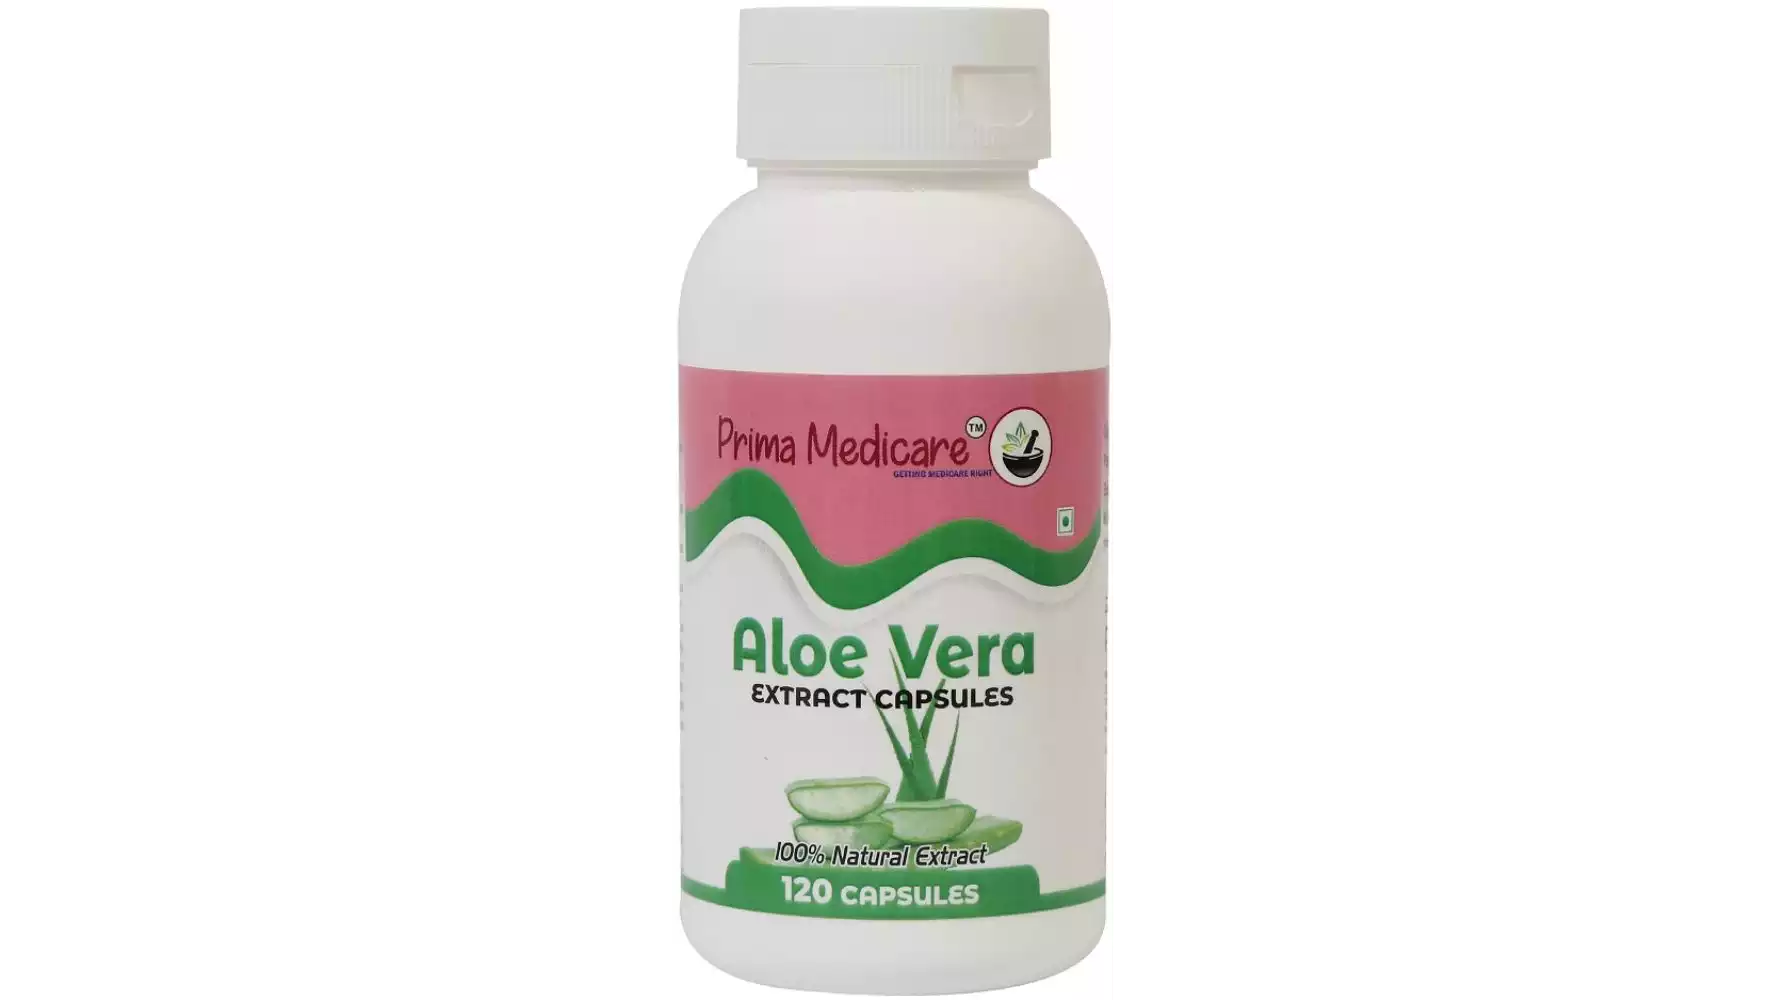 Prima Medicare Aloe Vera Extract Capsules (120caps)